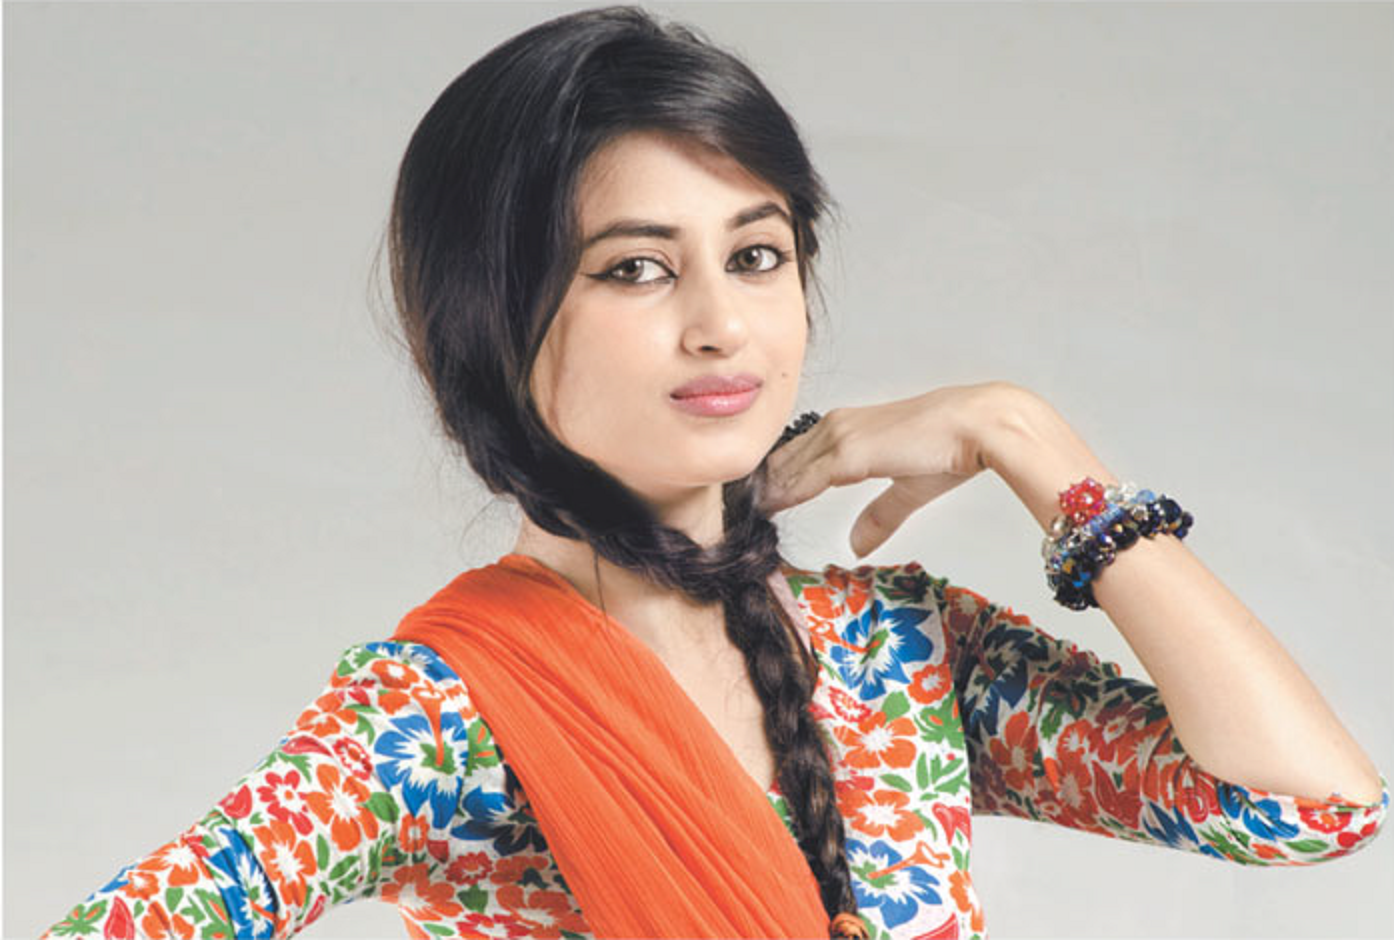 India Girls Hot Photos: sajal ali pakistani actress